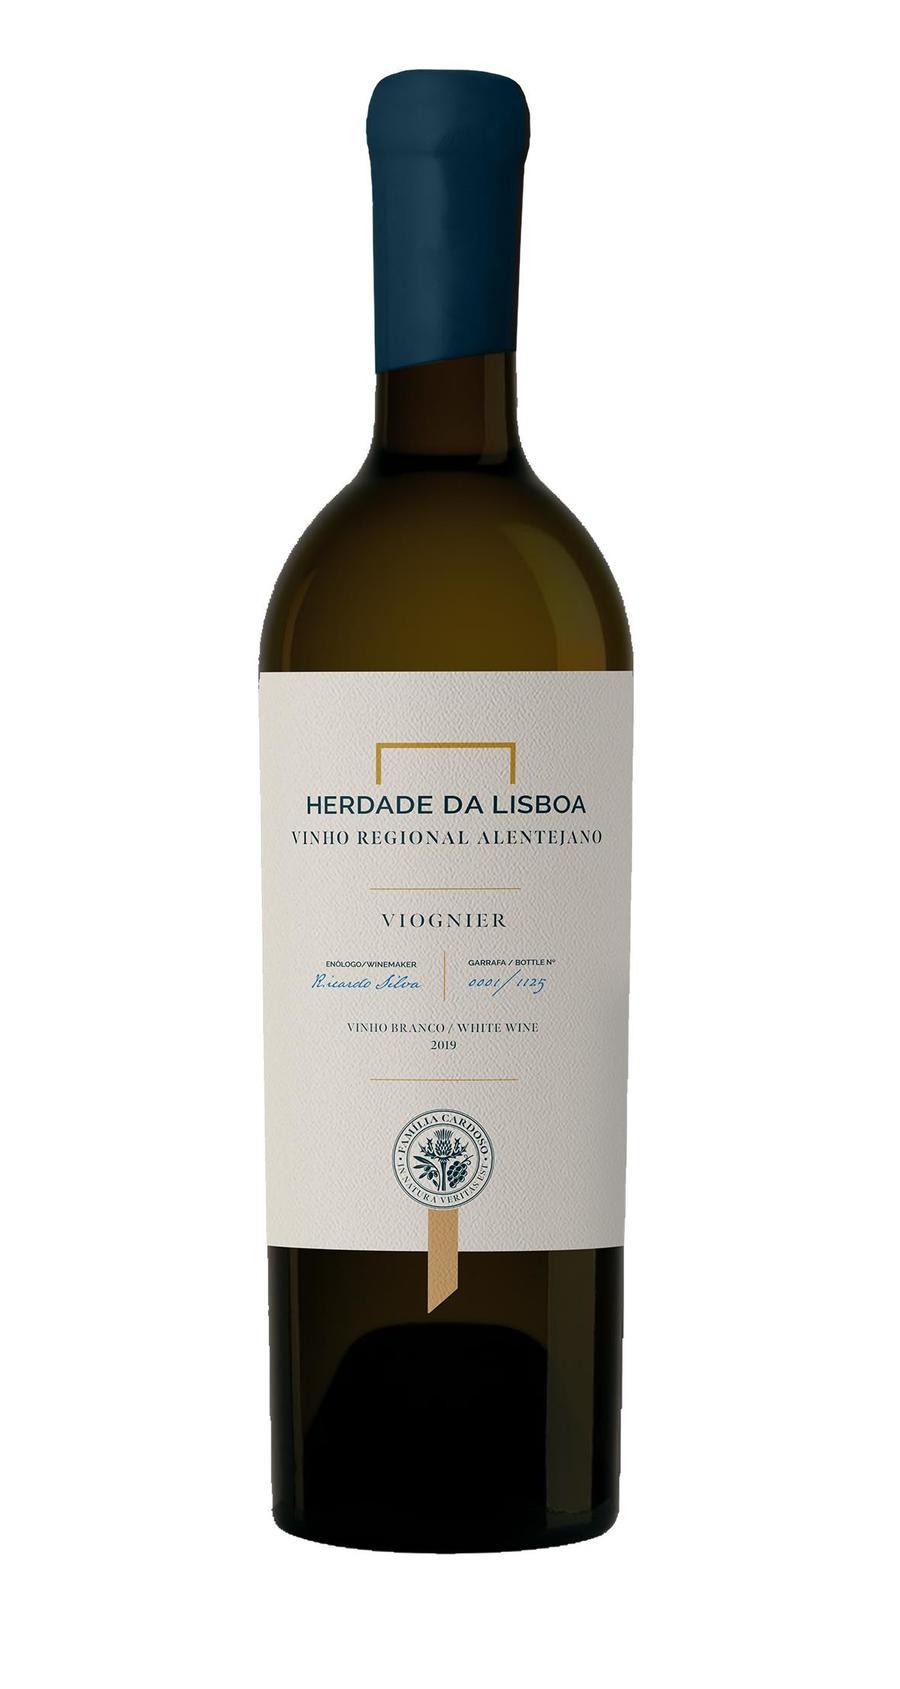 SAPO os - um - varietais alentejanos vinhos Atualidade Lisboa Lifestyle novo da anuncia paradigma para Herdade